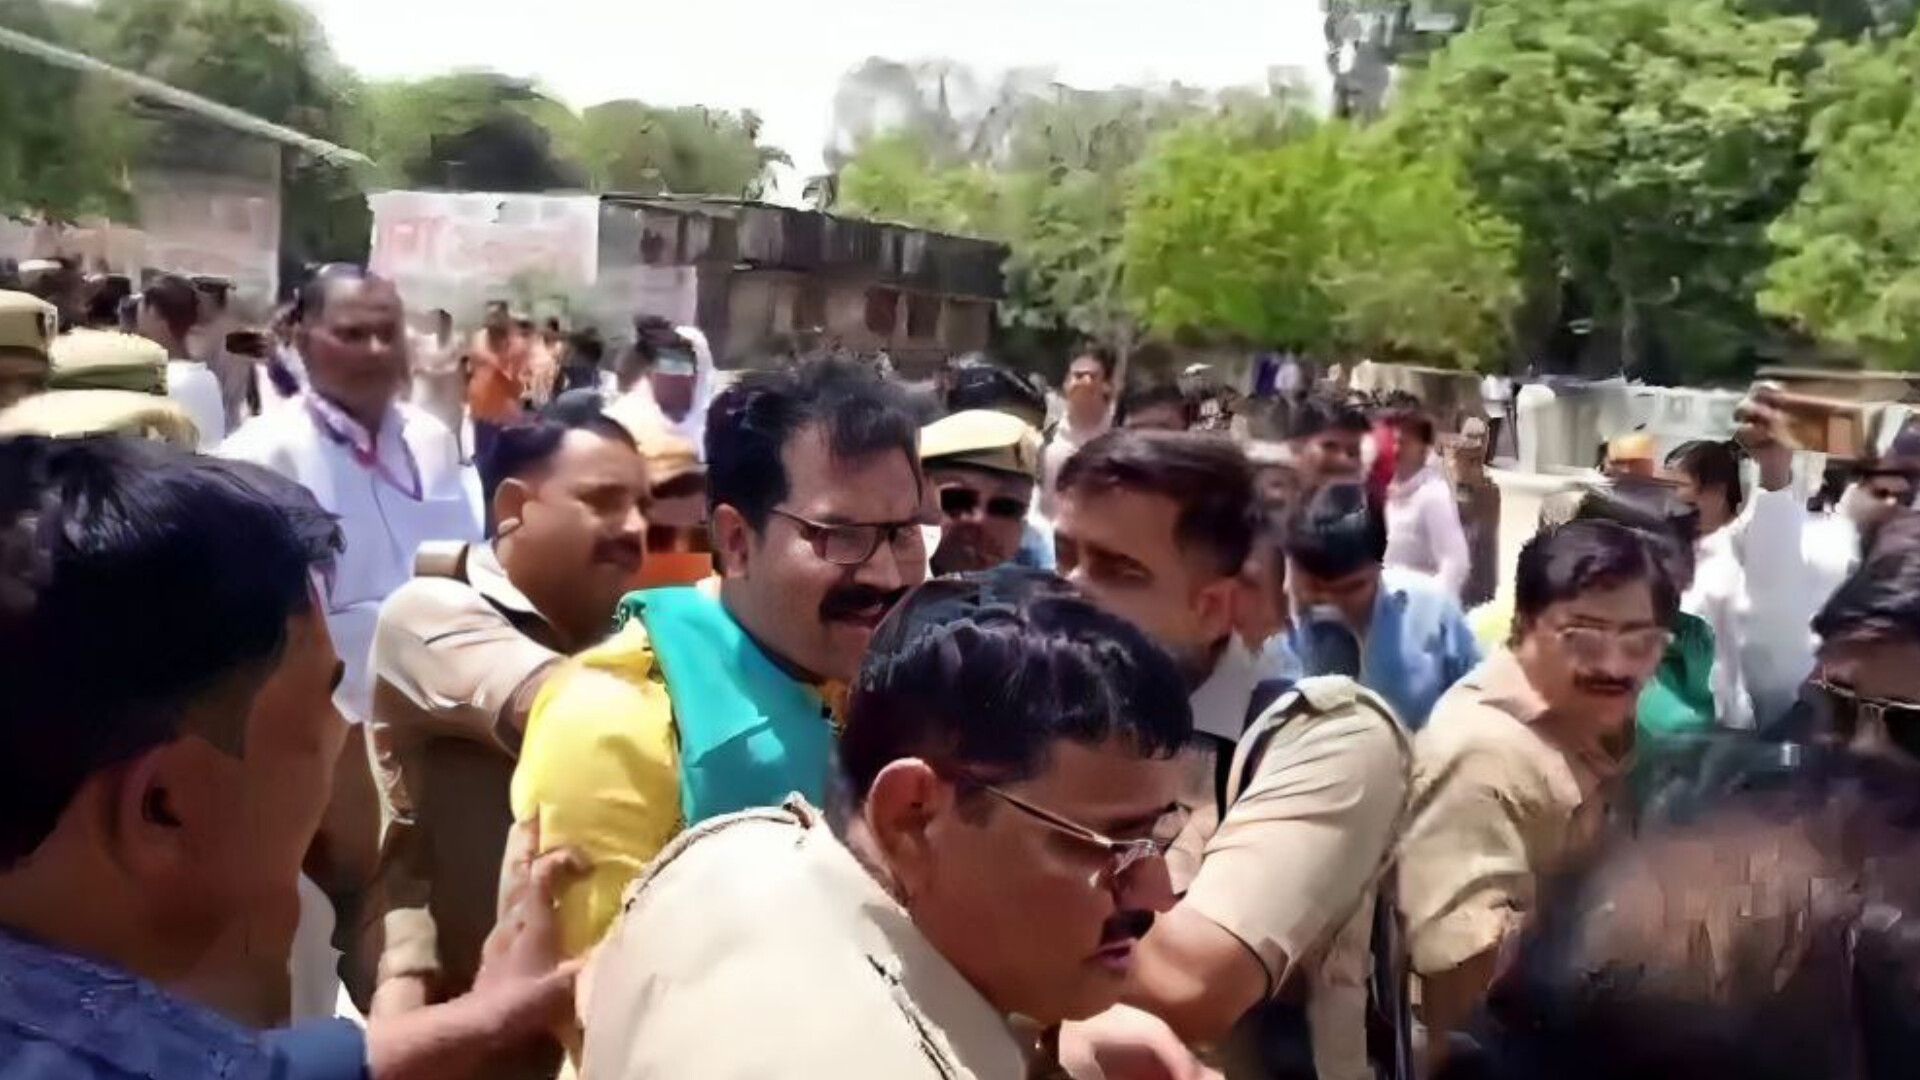 वीडियो: प्रतिष्ठित चैनल के कार्यक्रम में भाजपा और सपा नेताओं के बीच झड़प, पुलिस को करना पड़ा हस्तक्षेप